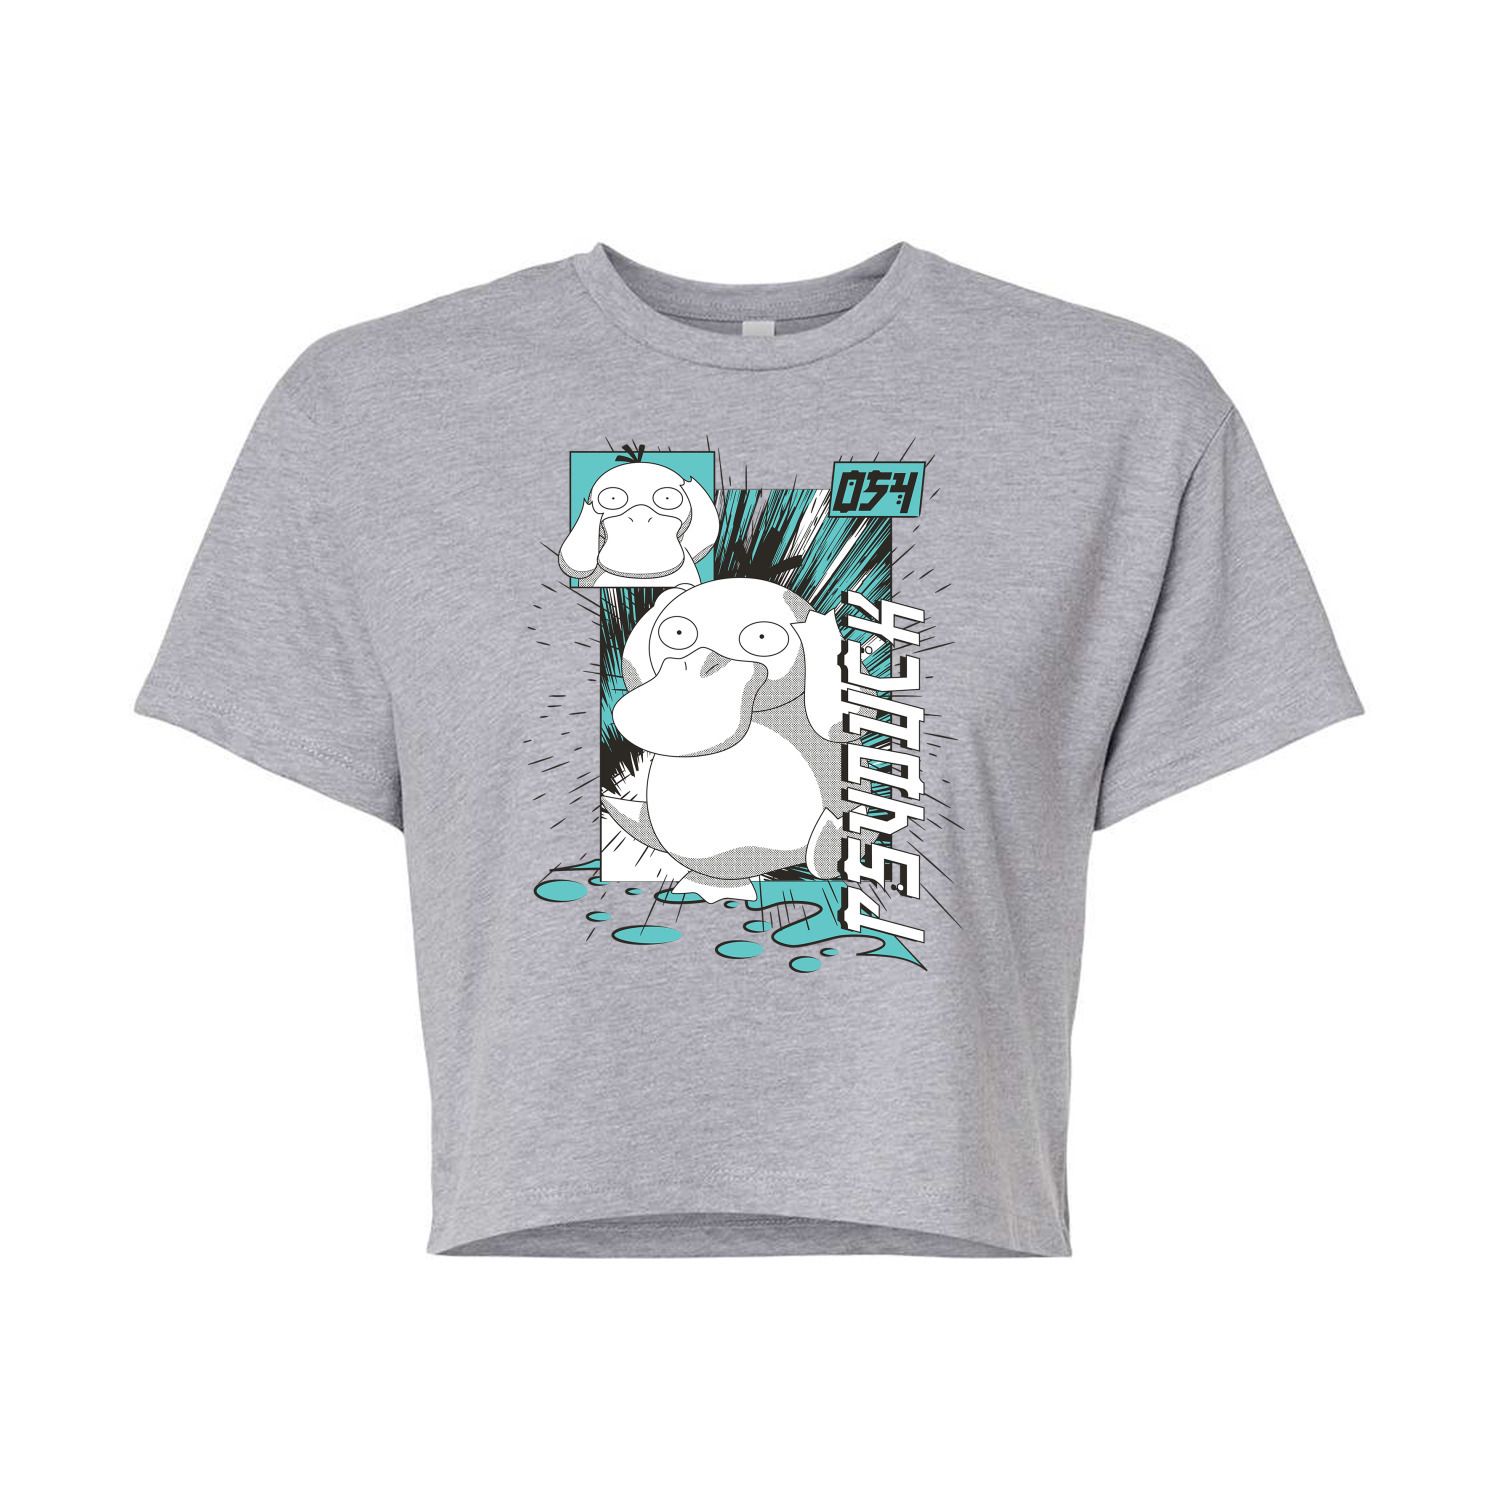 Укороченная футболка с рисунком Pokémon для юниоров Psyduck Licensed Character